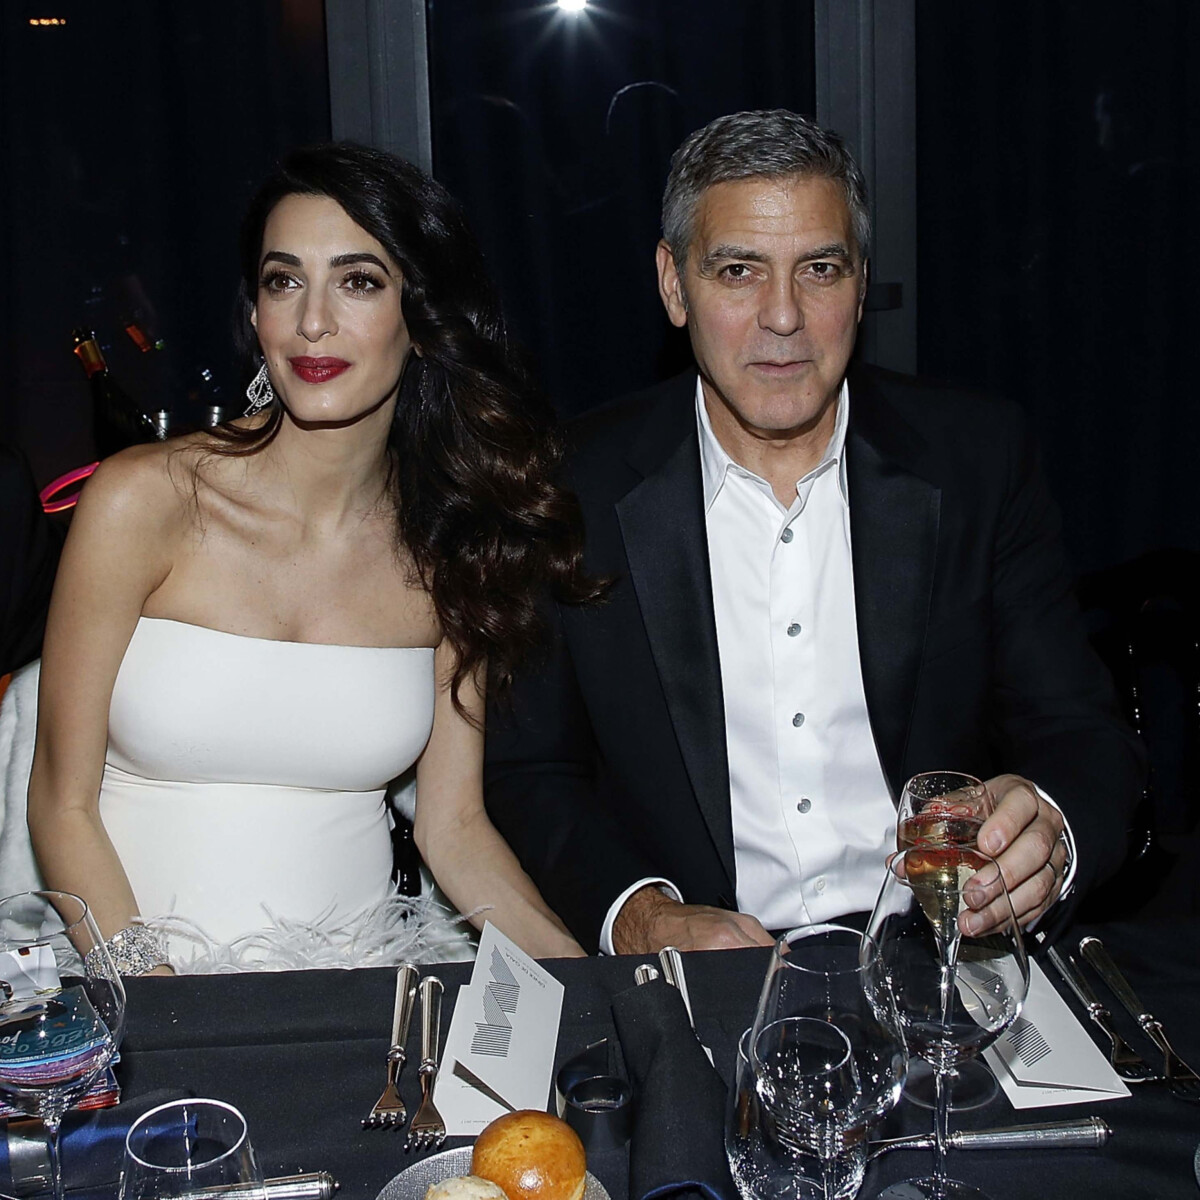 Less be George és Amal Clooney új, provence-i villájába, ahol barátságos konyha vár